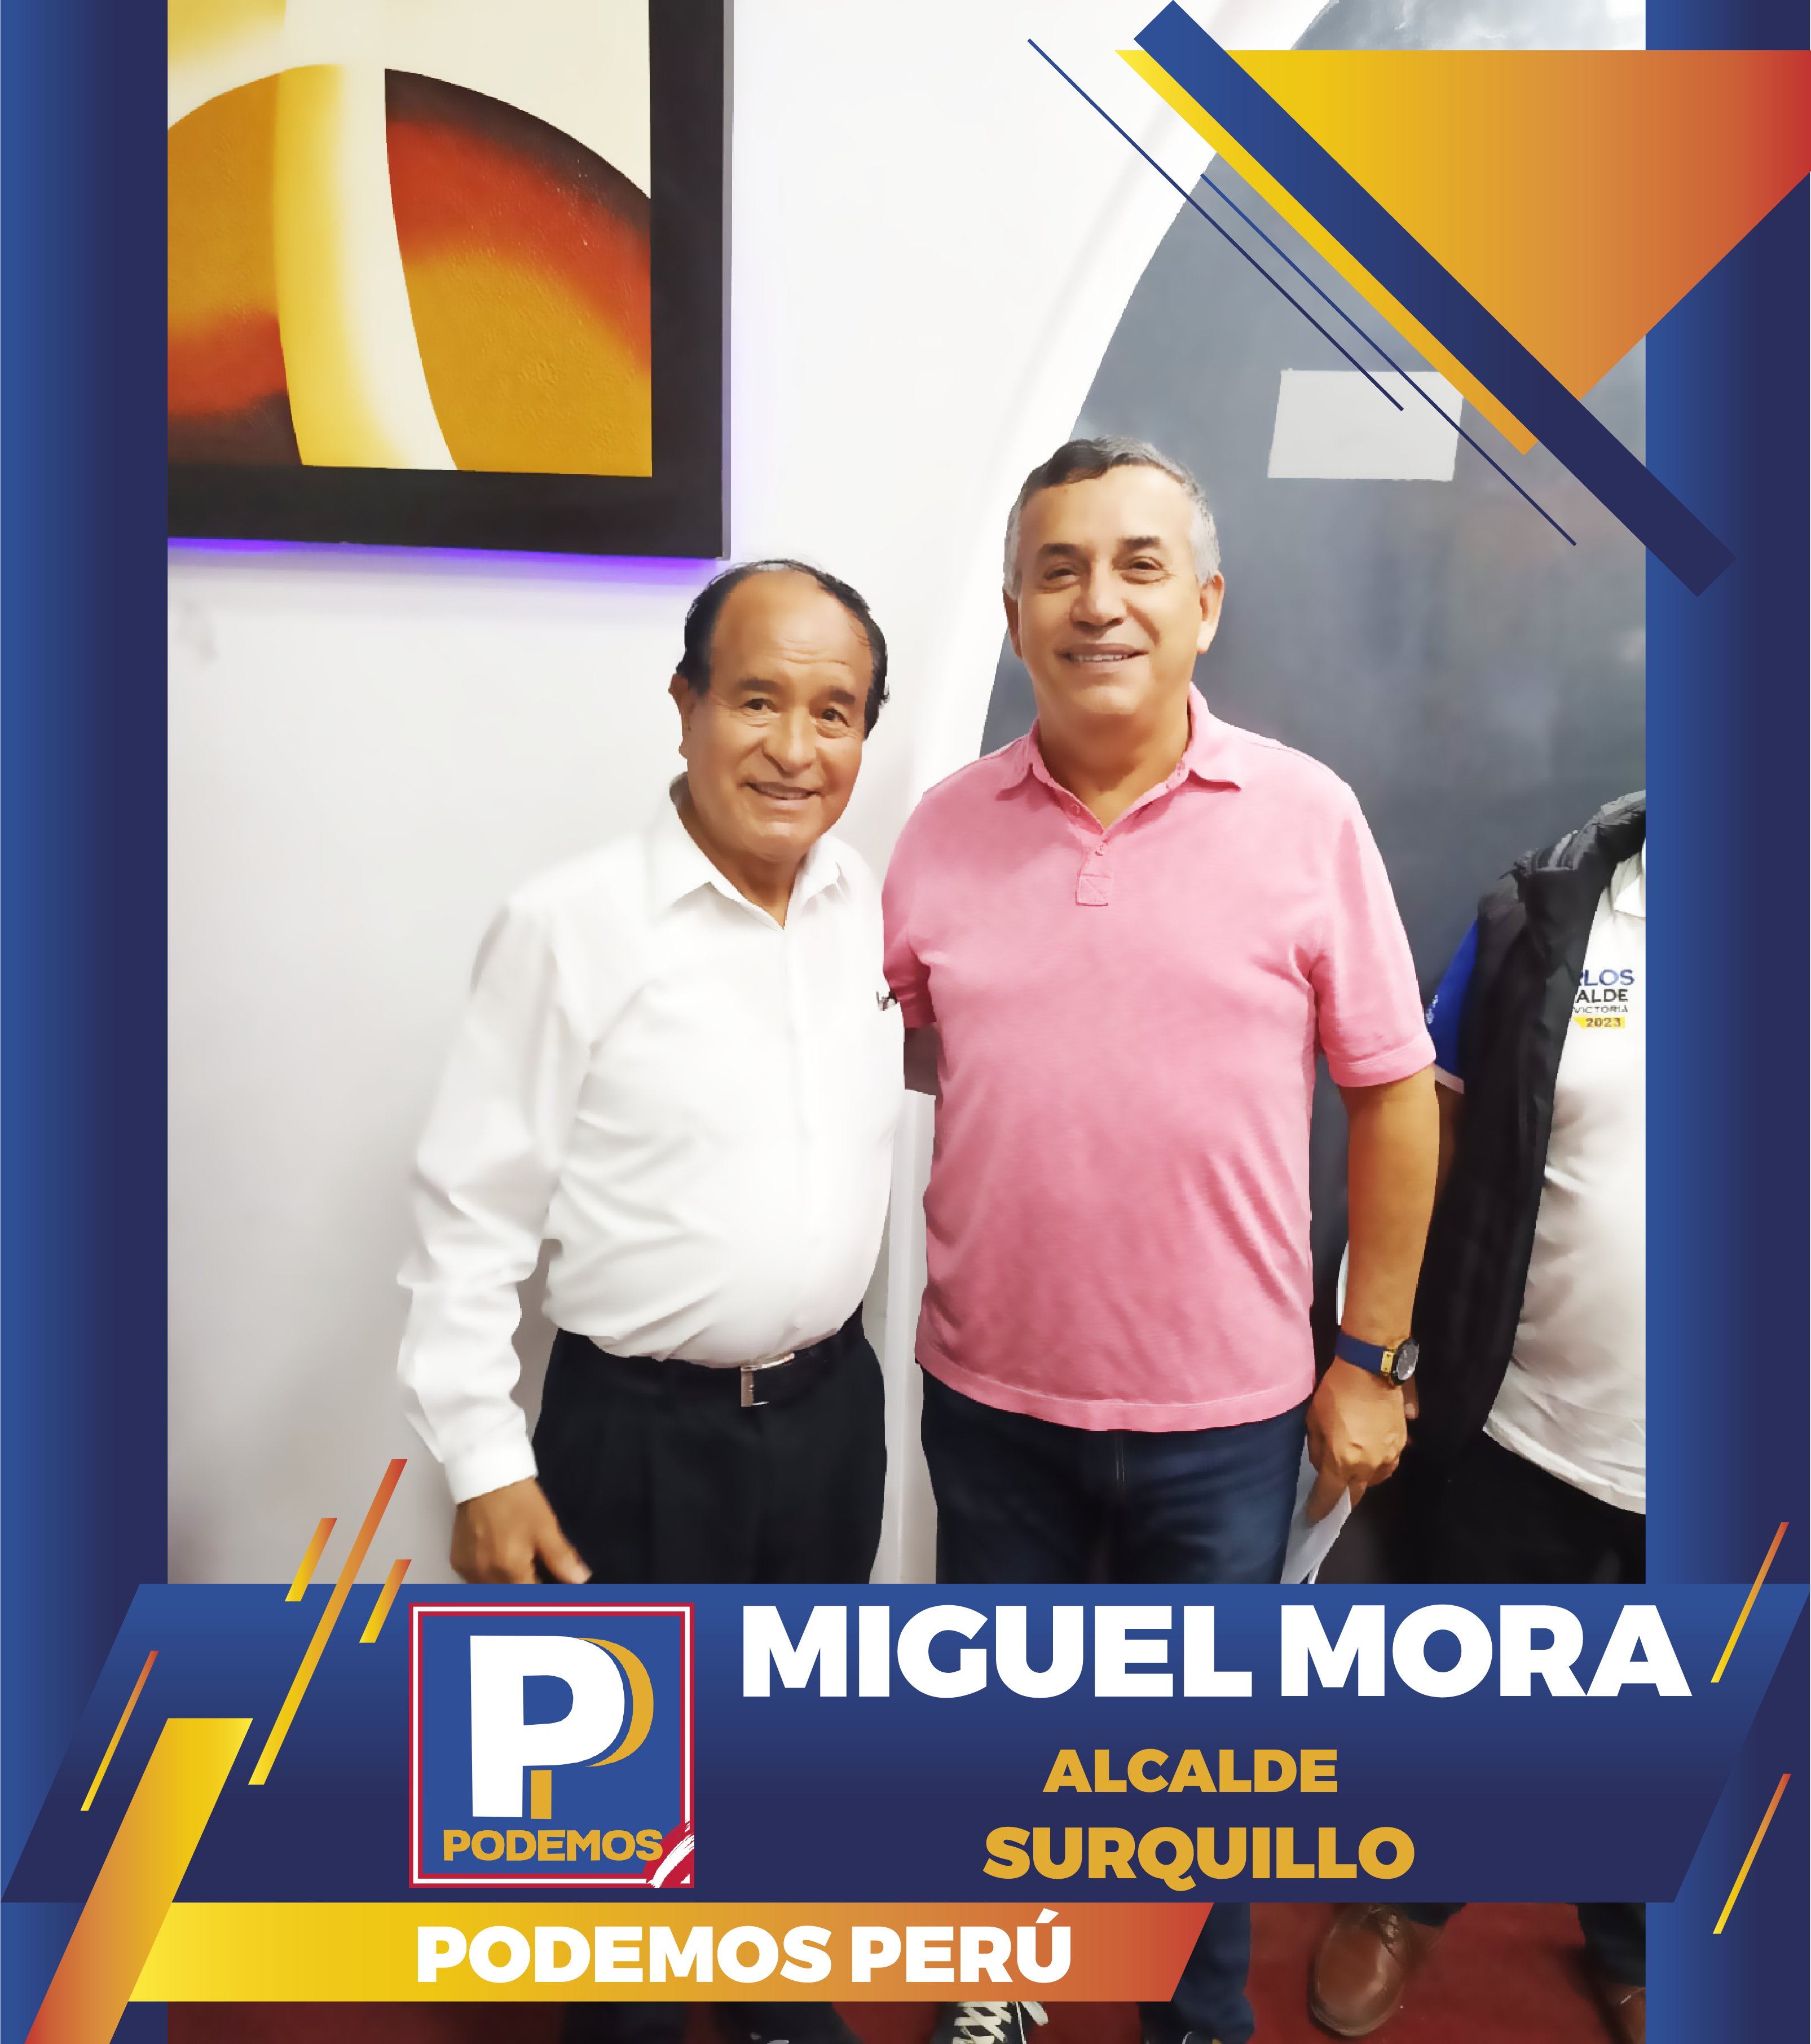 Miguel Mora